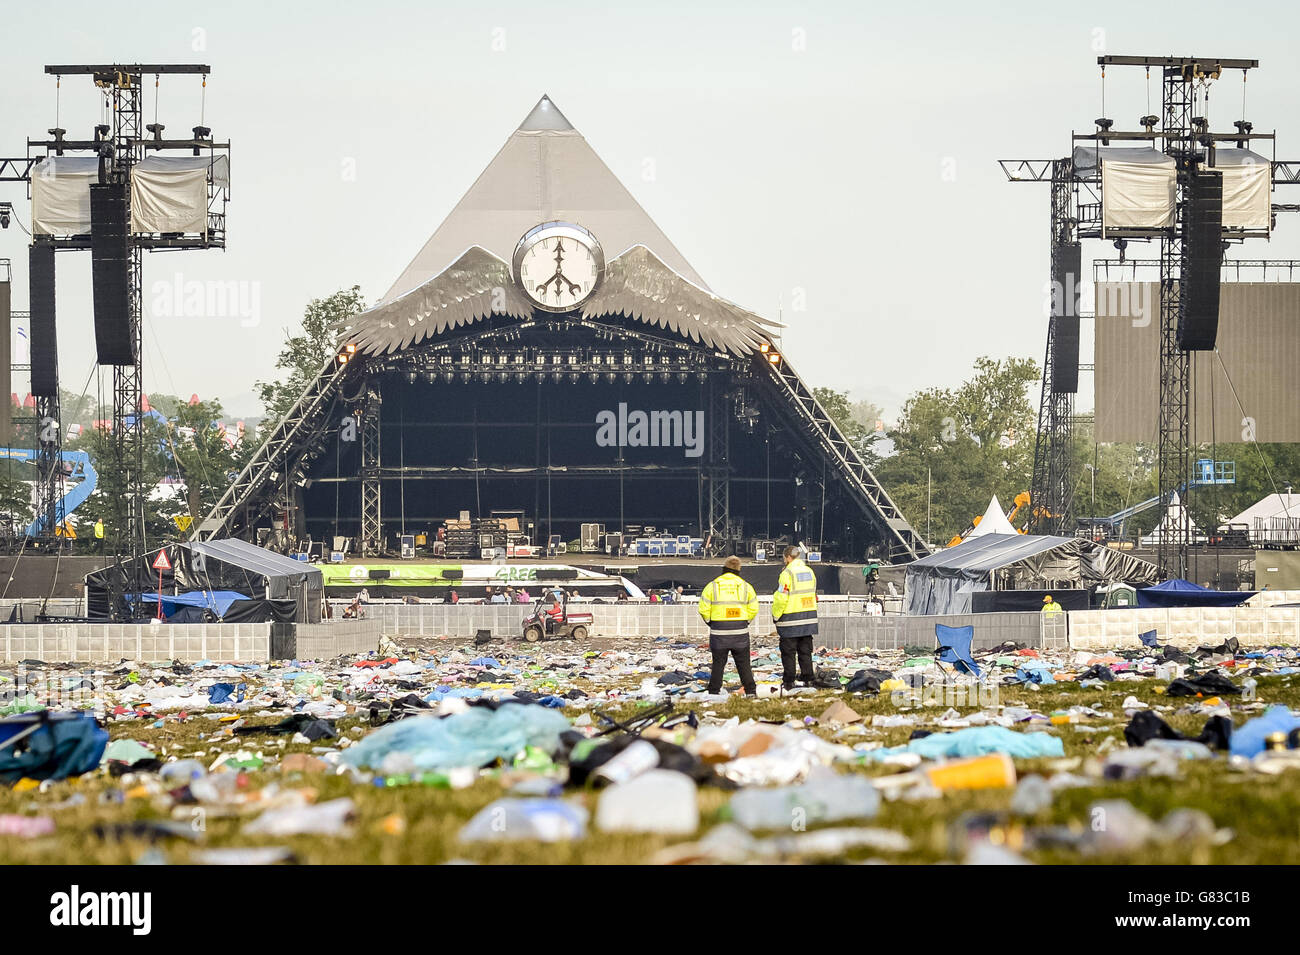 Glastonbury Festival 2015 - dopo. I rifiuti sparsi attraverso il palcoscenico della Piramide dopo il Festival di Glastonbury, presso la Worthy Farm, Somerset. Foto Stock